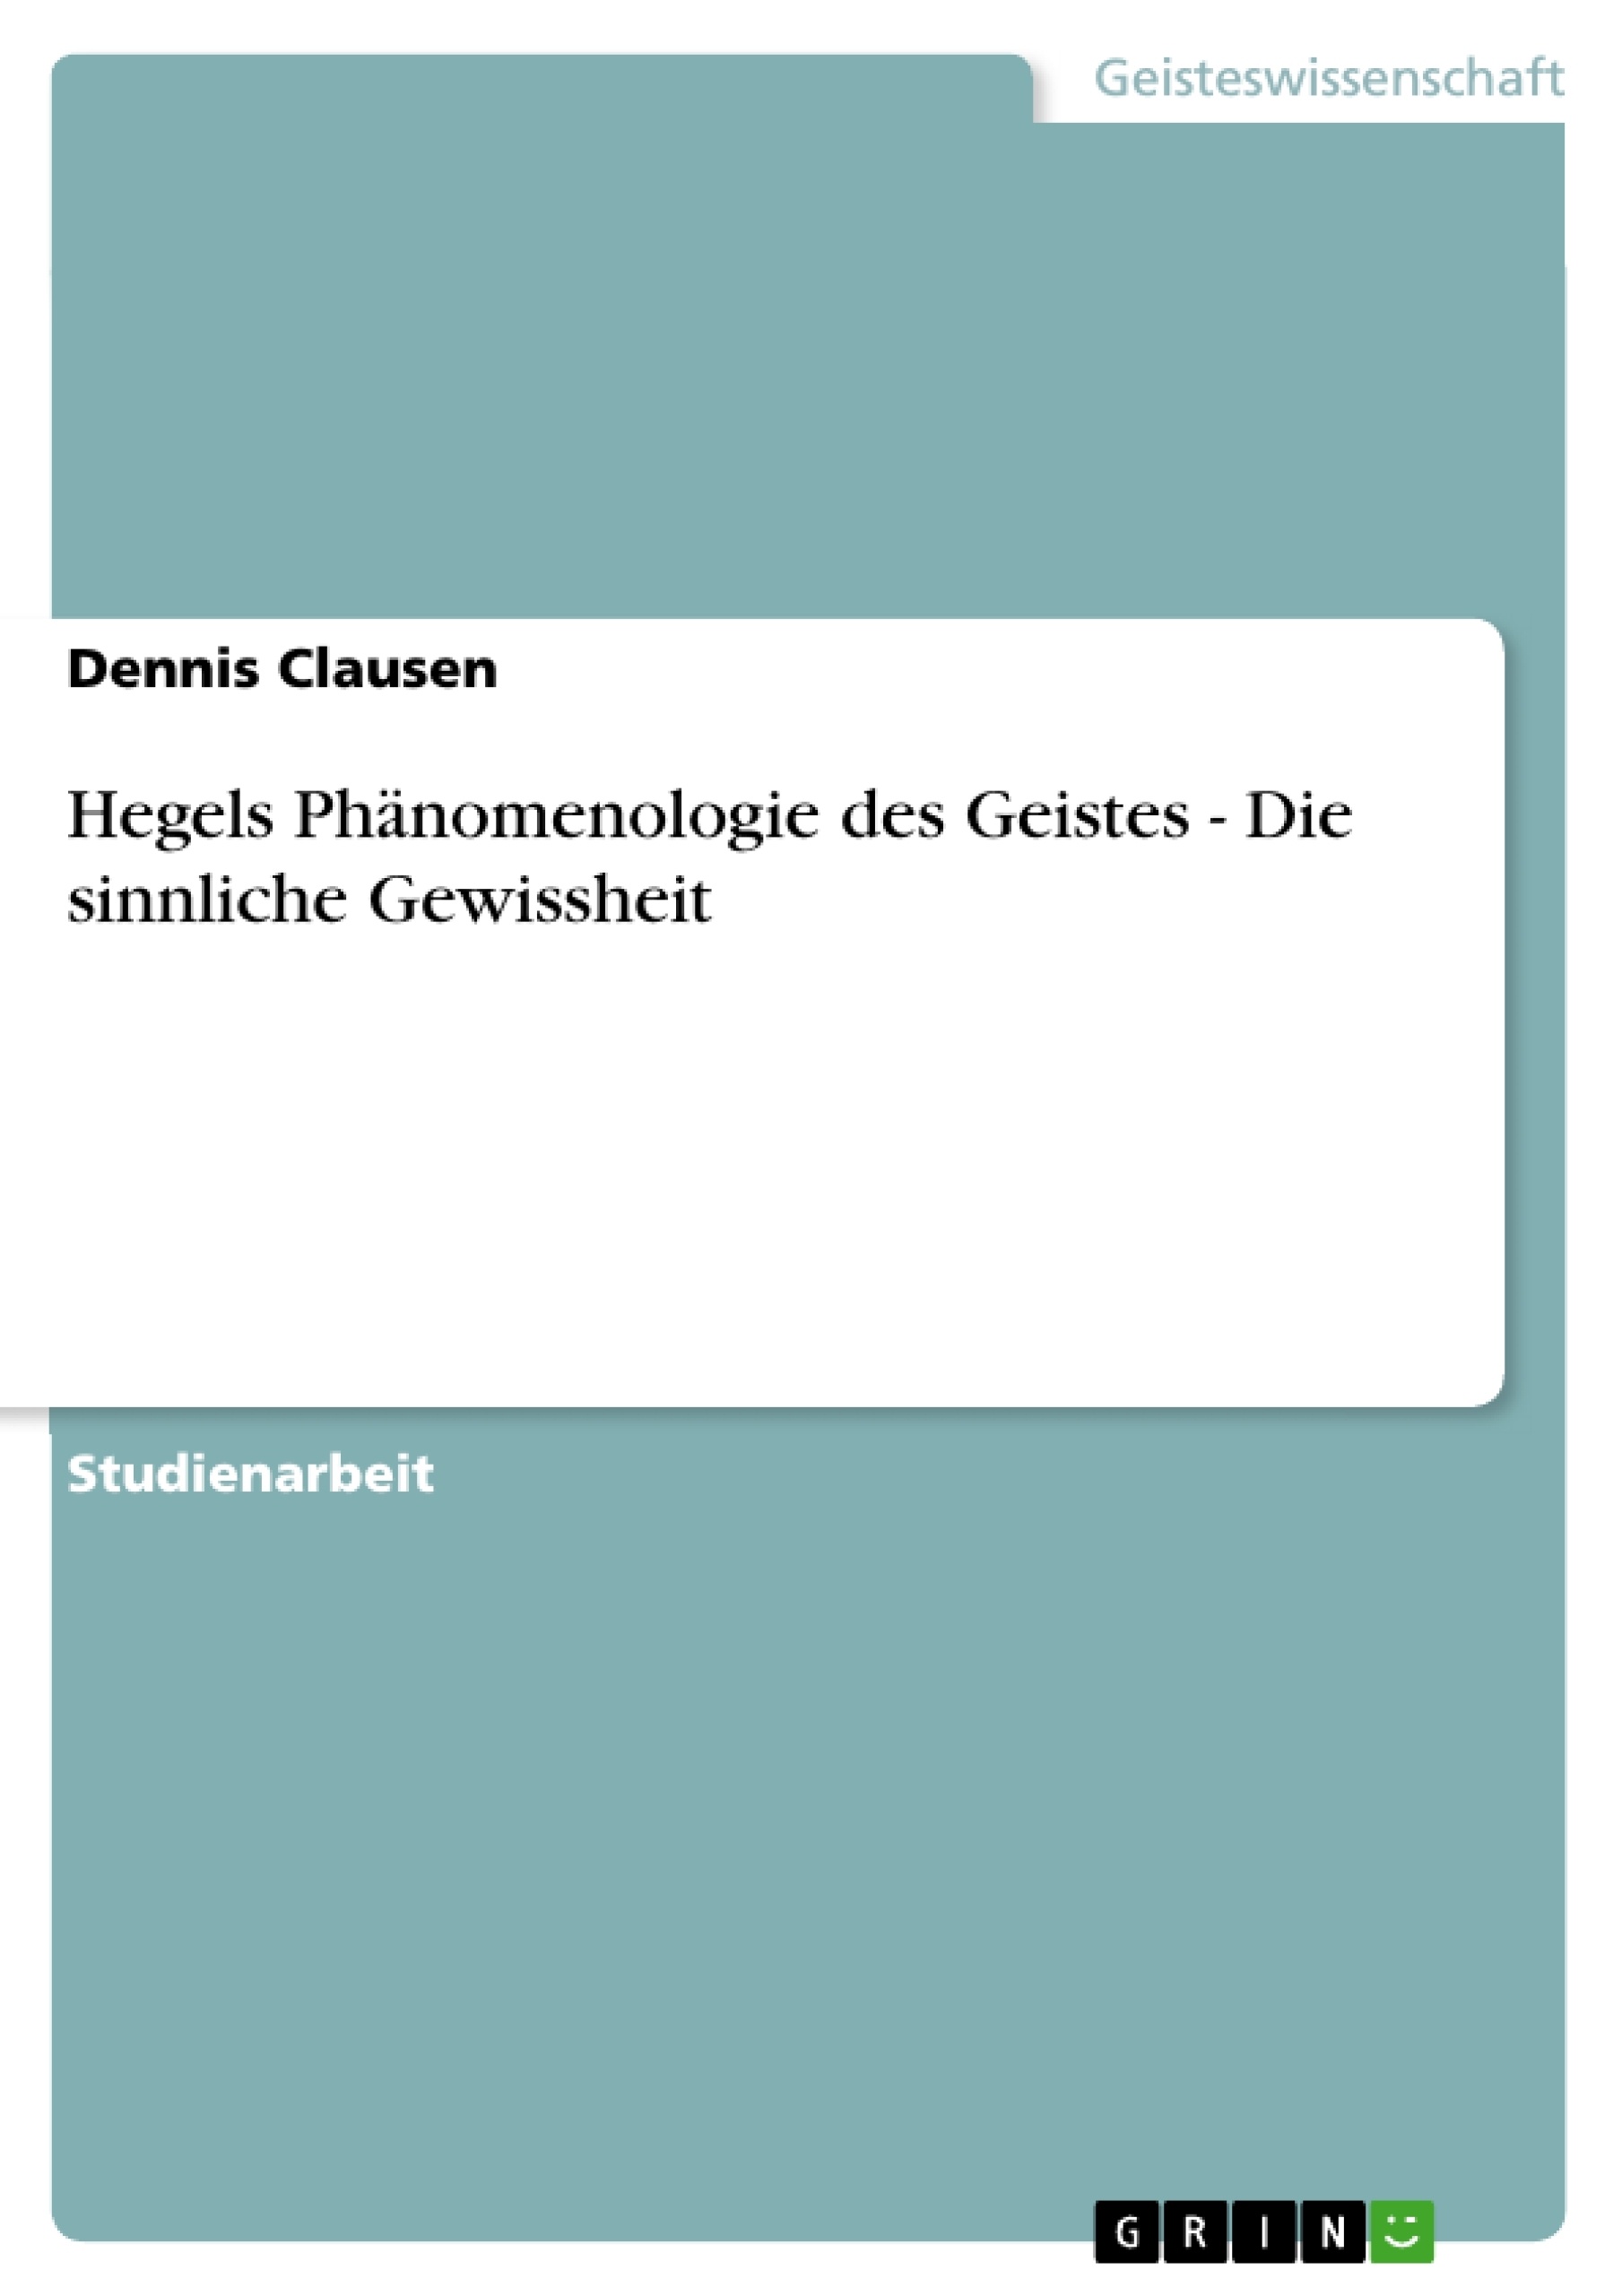 Title: Hegels Phänomenologie des Geistes - Die sinnliche Gewissheit